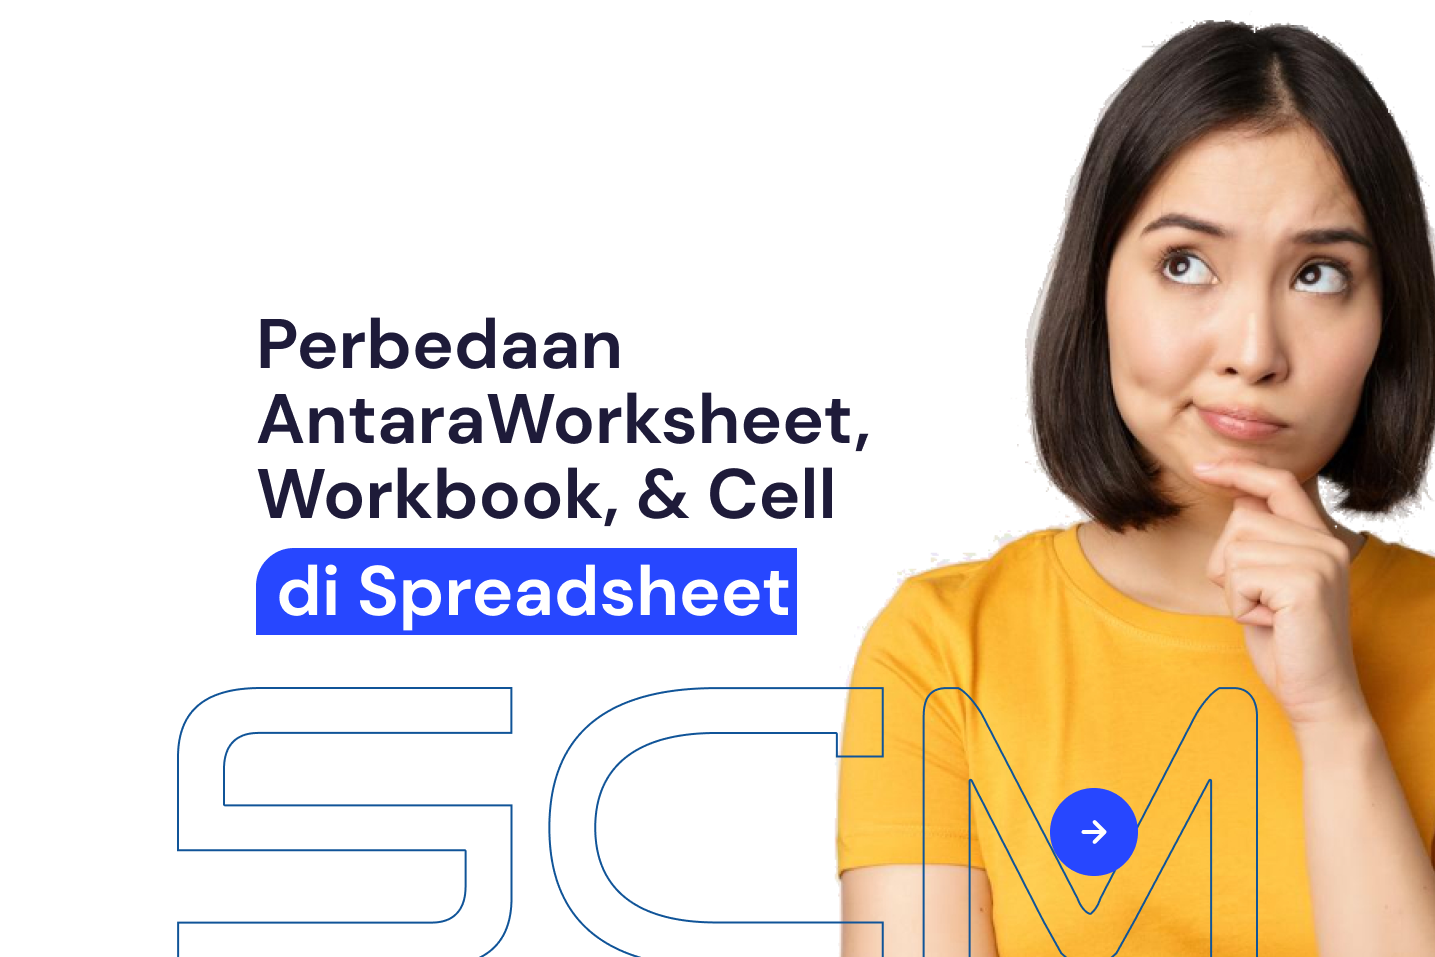 Perbedaan Antara Worksheet, Workbook, & Cell di Spreadsheet